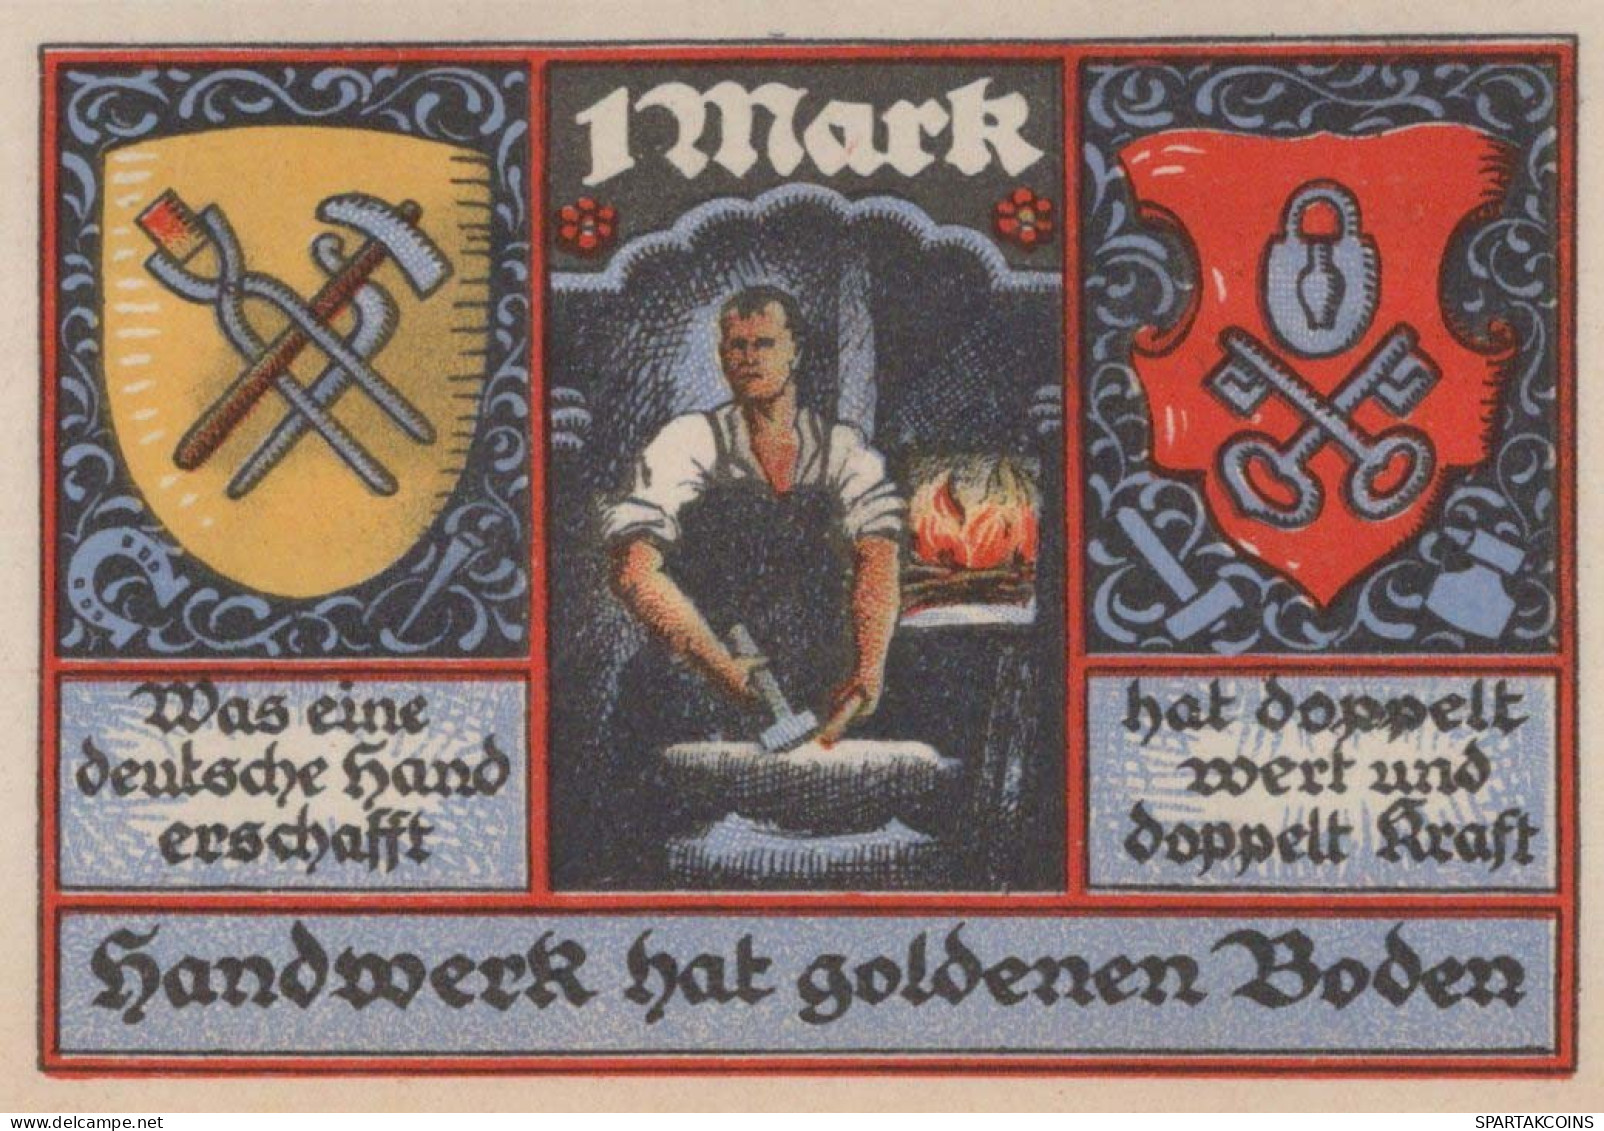 1 MARK 1922 Stadt STOLZENAU Hanover DEUTSCHLAND Notgeld Banknote #PF948 - [11] Emissions Locales